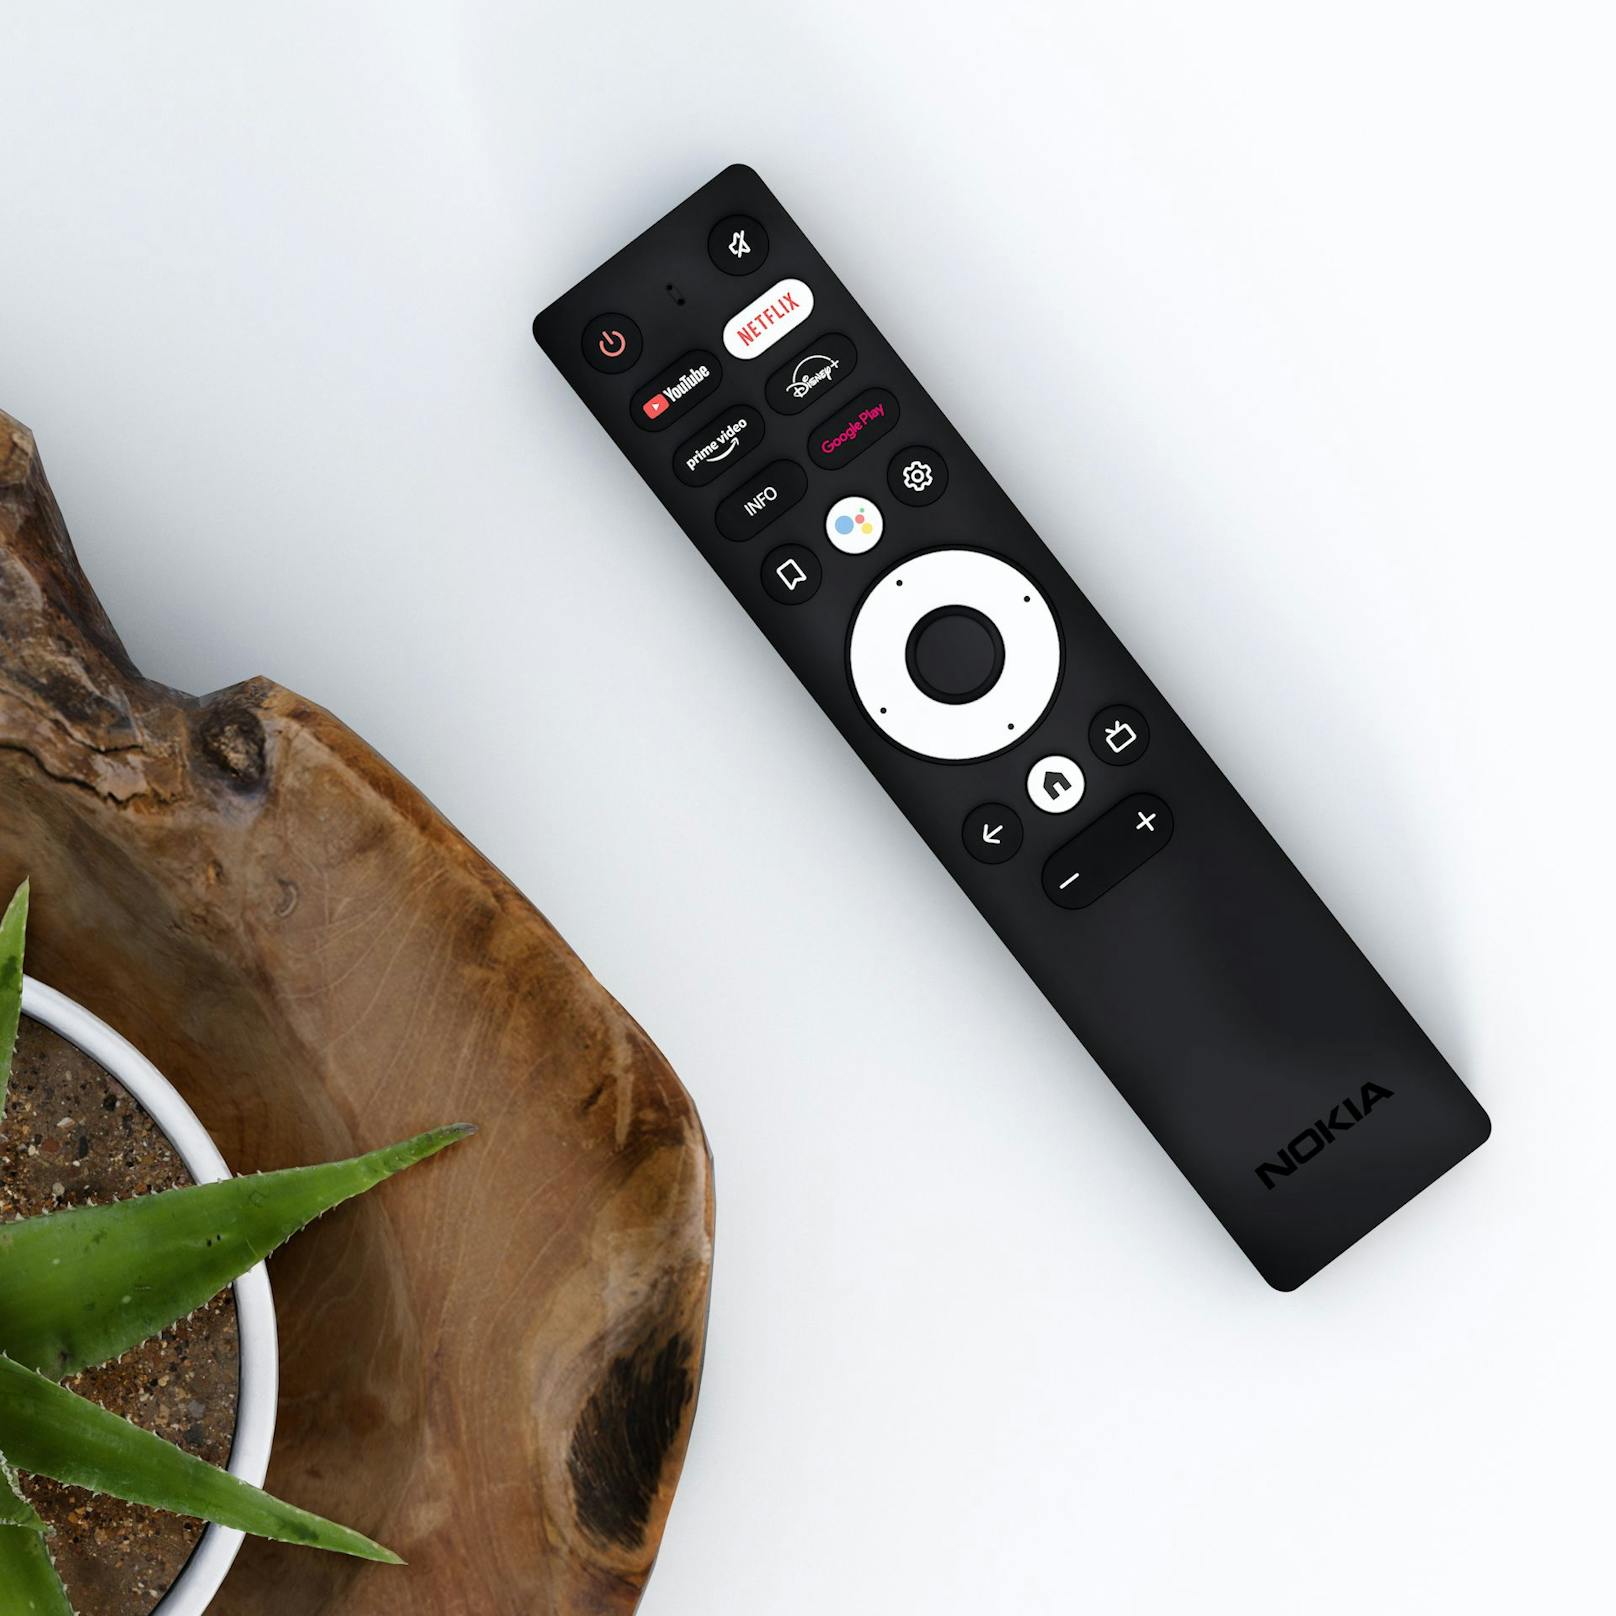 Der neue Nokia Streaming Stick 800 verwandelt herkömmliche TVs in einen Smart TV.